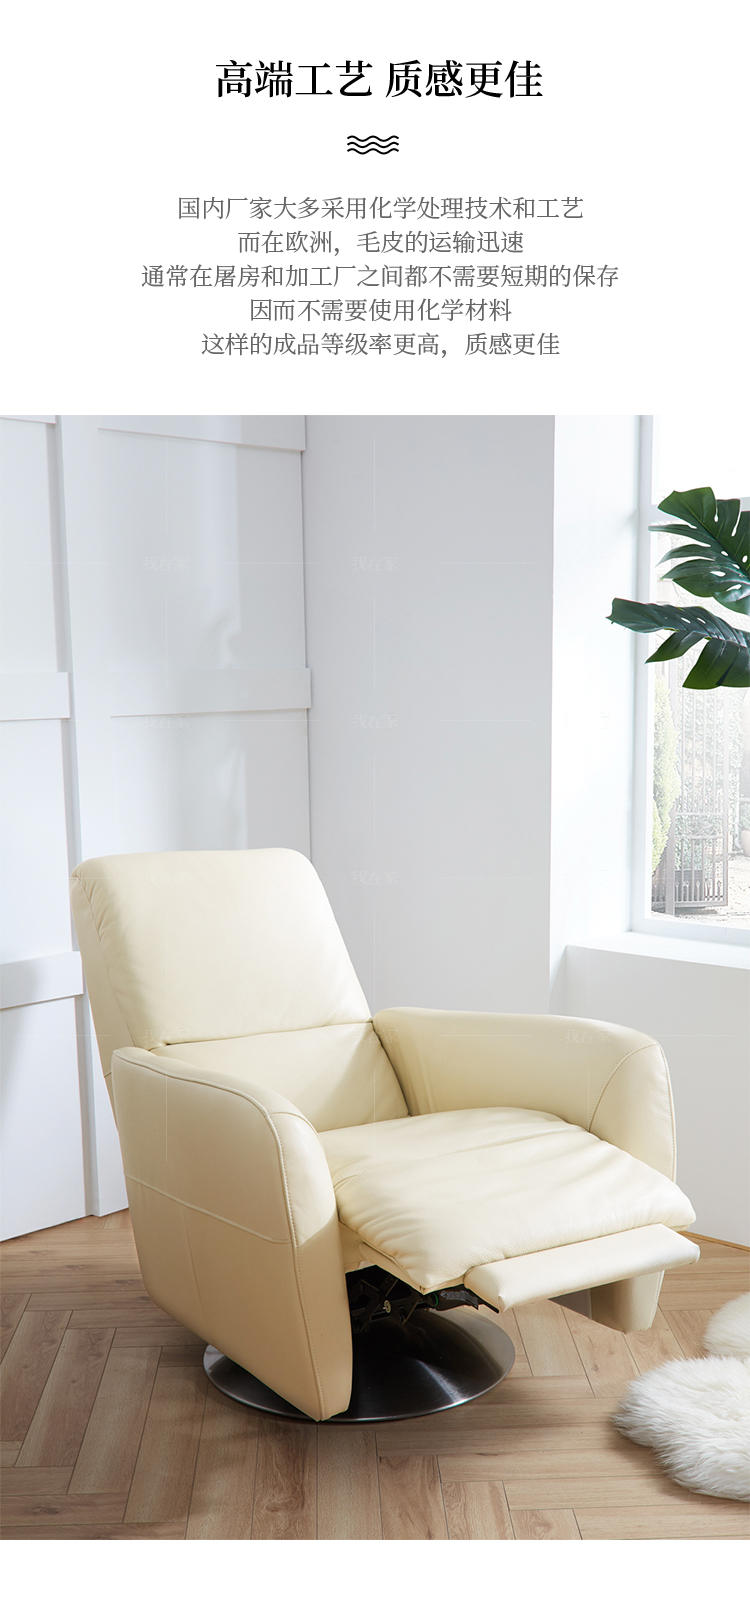 现代简约风格蒙特休闲椅的家具详细介绍